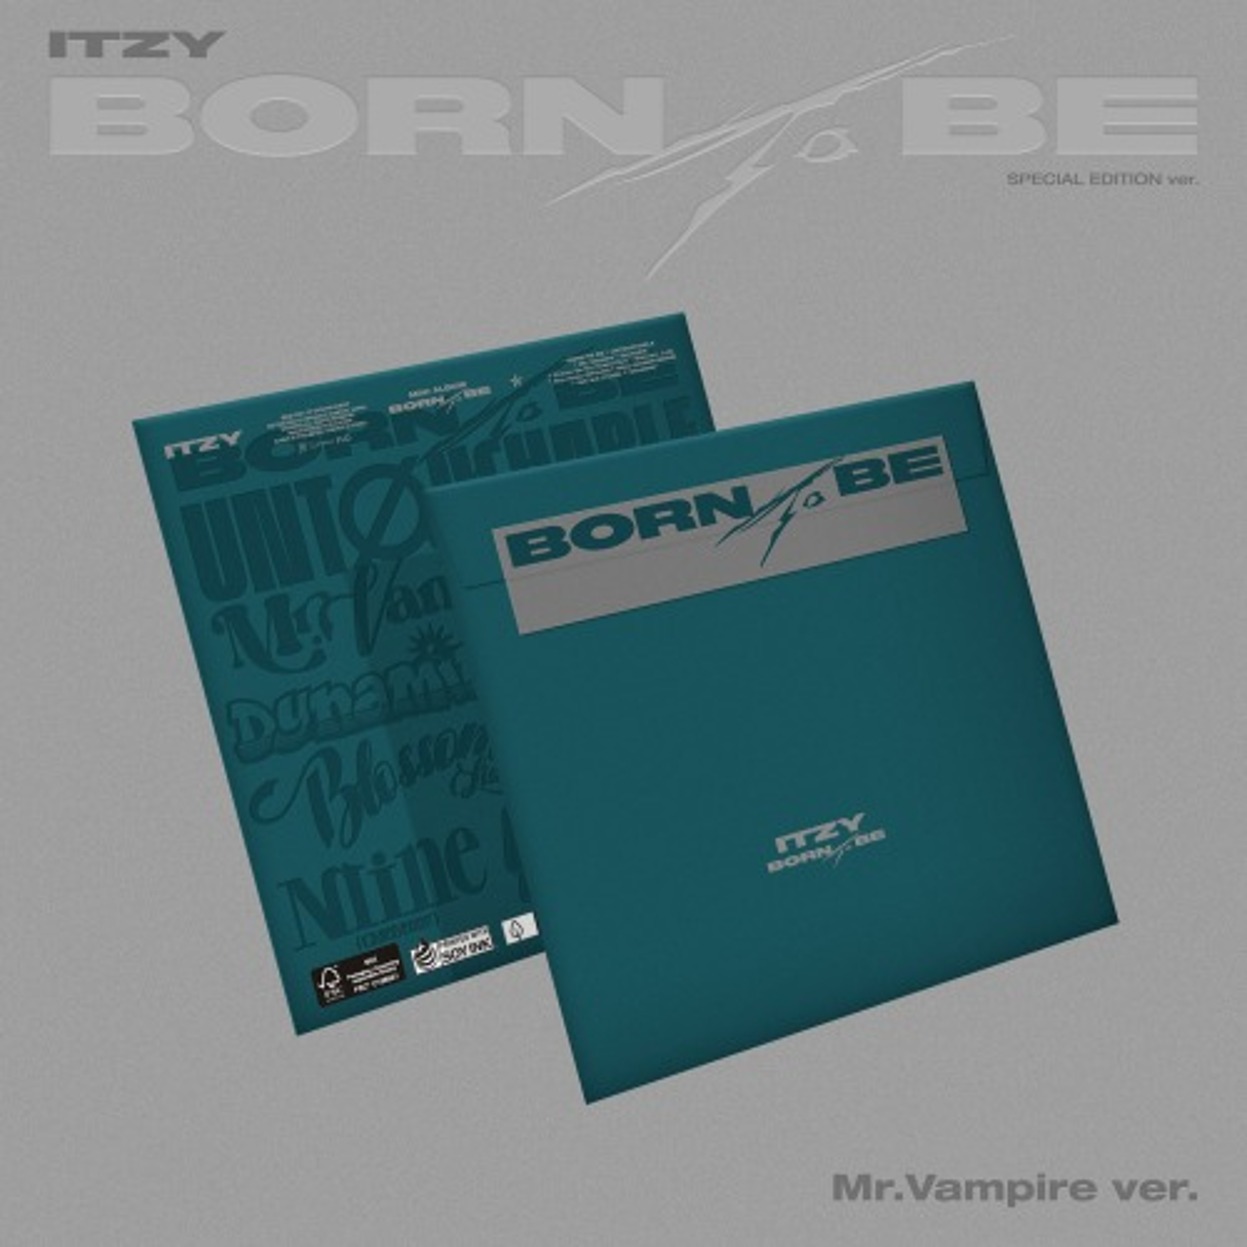 있지 (ITZY) - [BORN TO BE] (Mr. Vampire Ver.) (스페셜반)